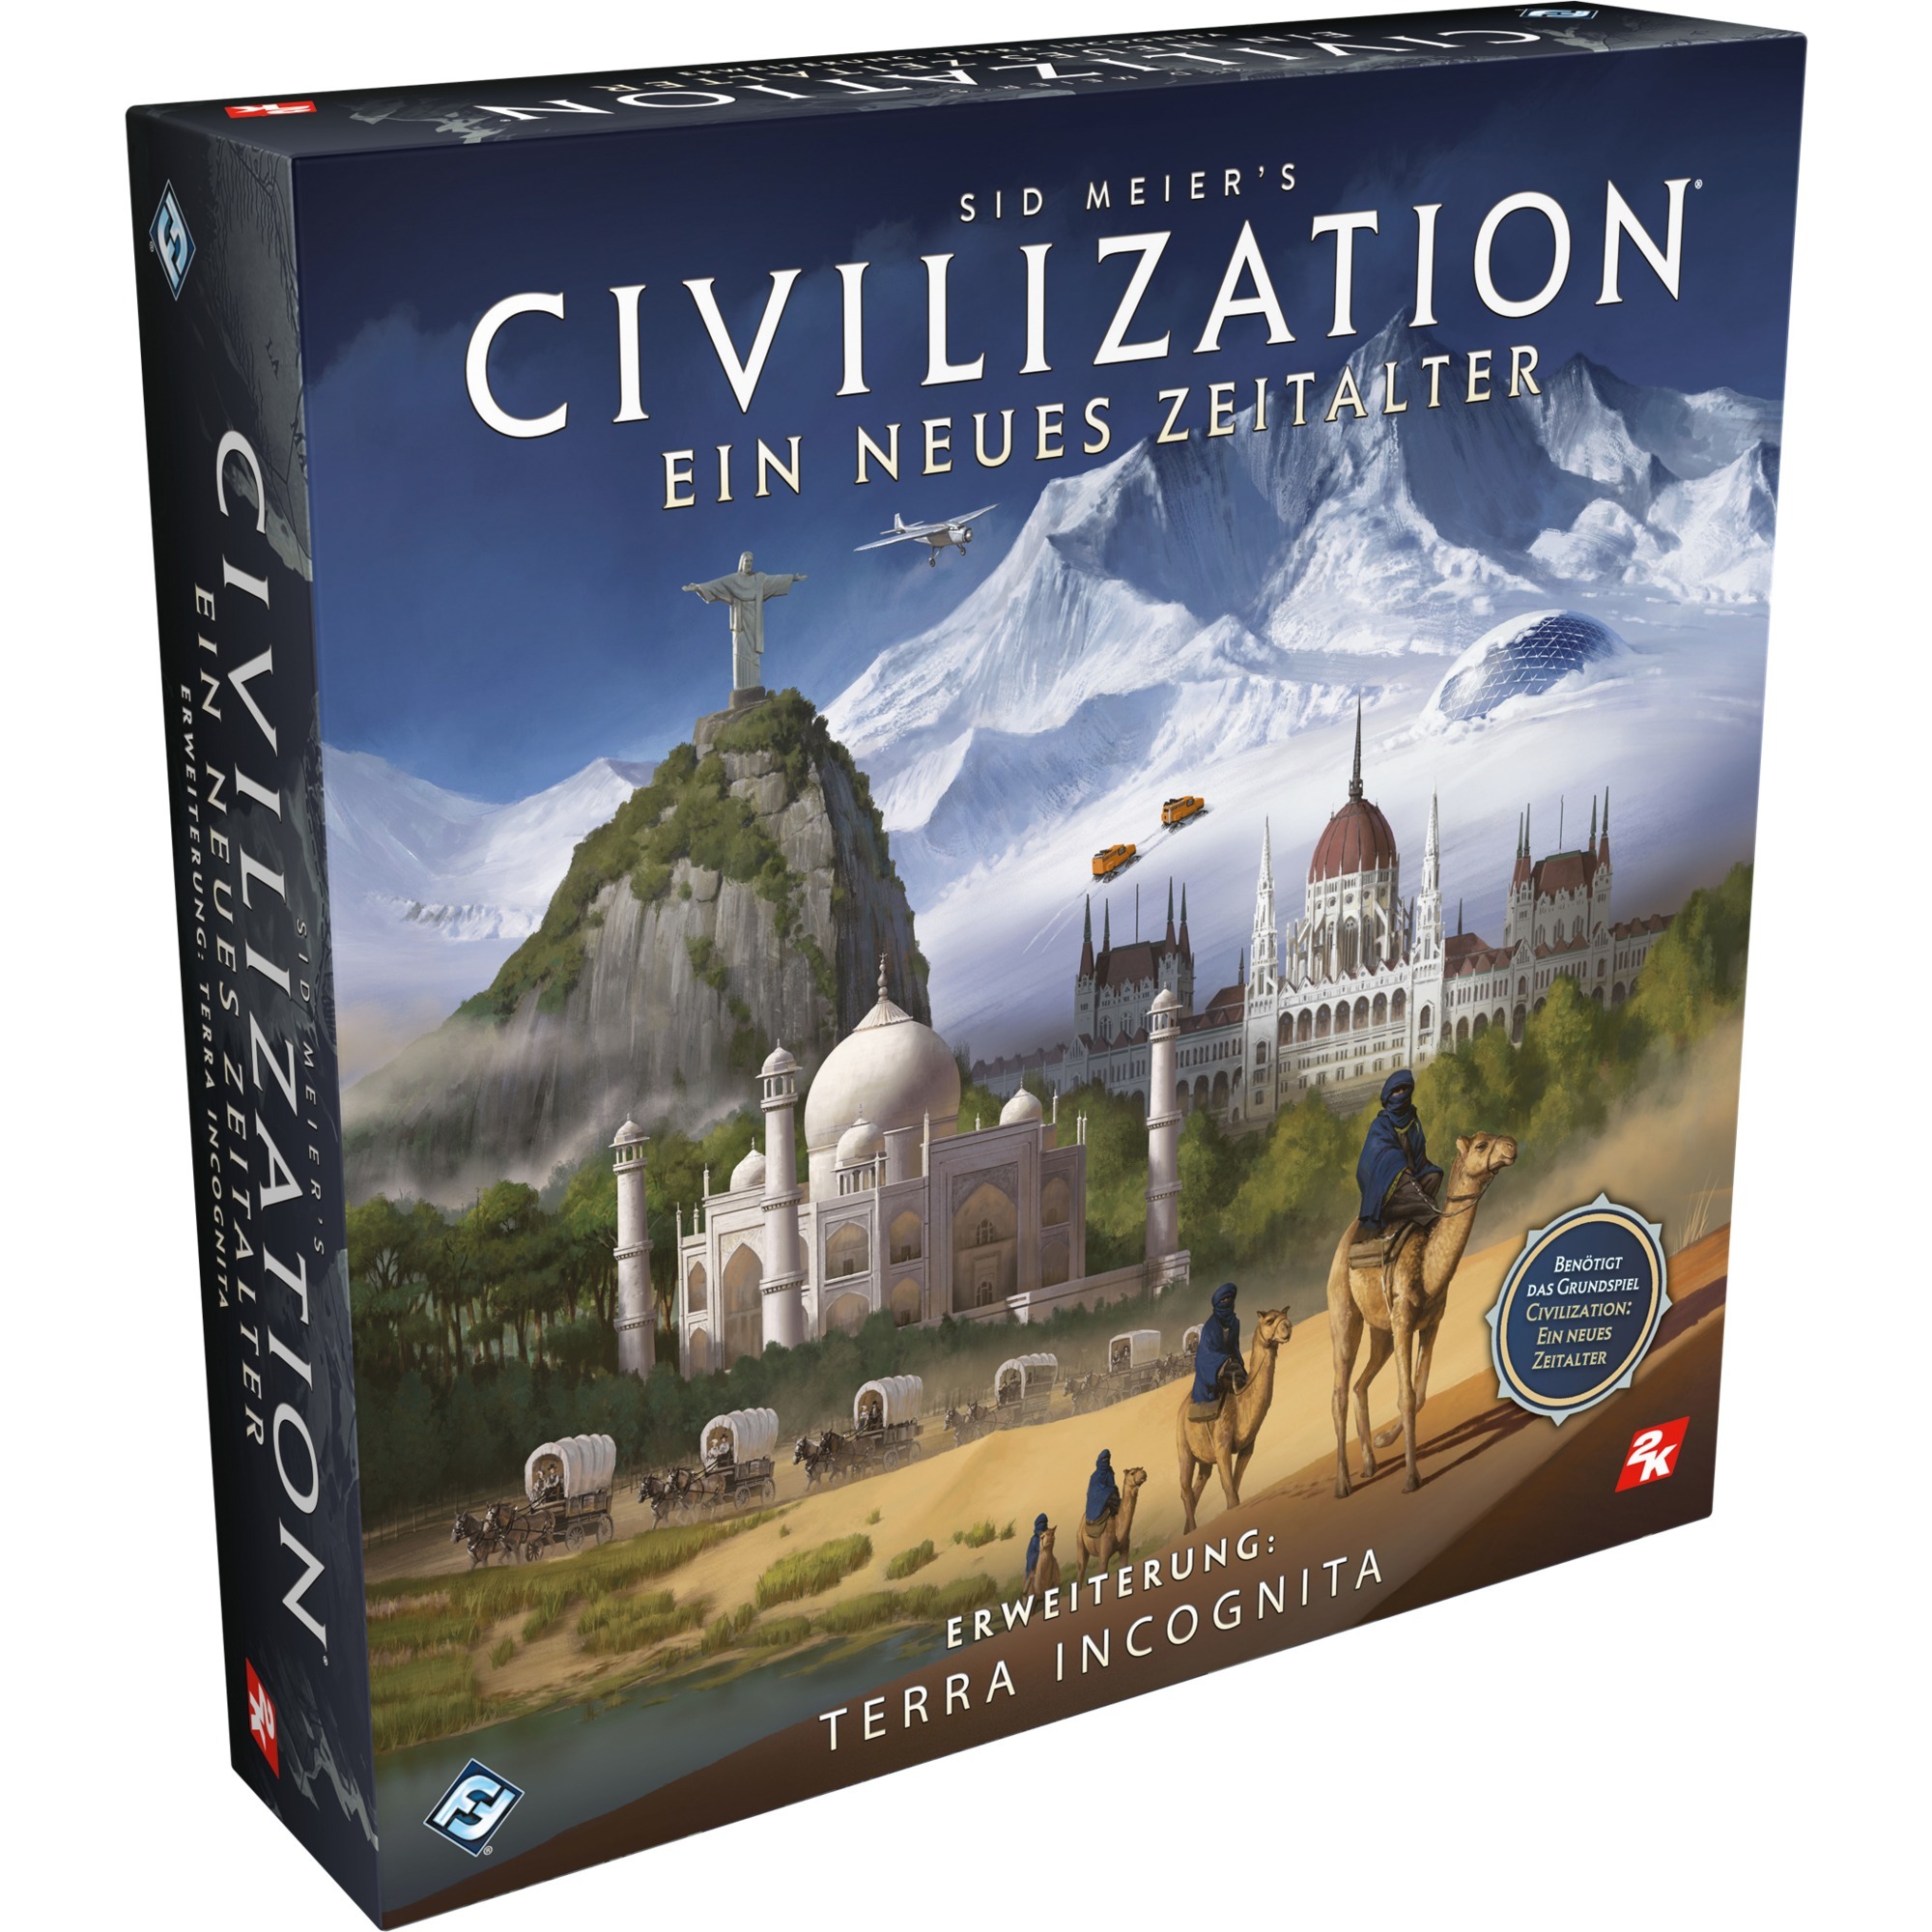 Image of Alternate - Civilization: Ein neues Zeitalter - Terra Incognita, Brettspiel online einkaufen bei Alternate